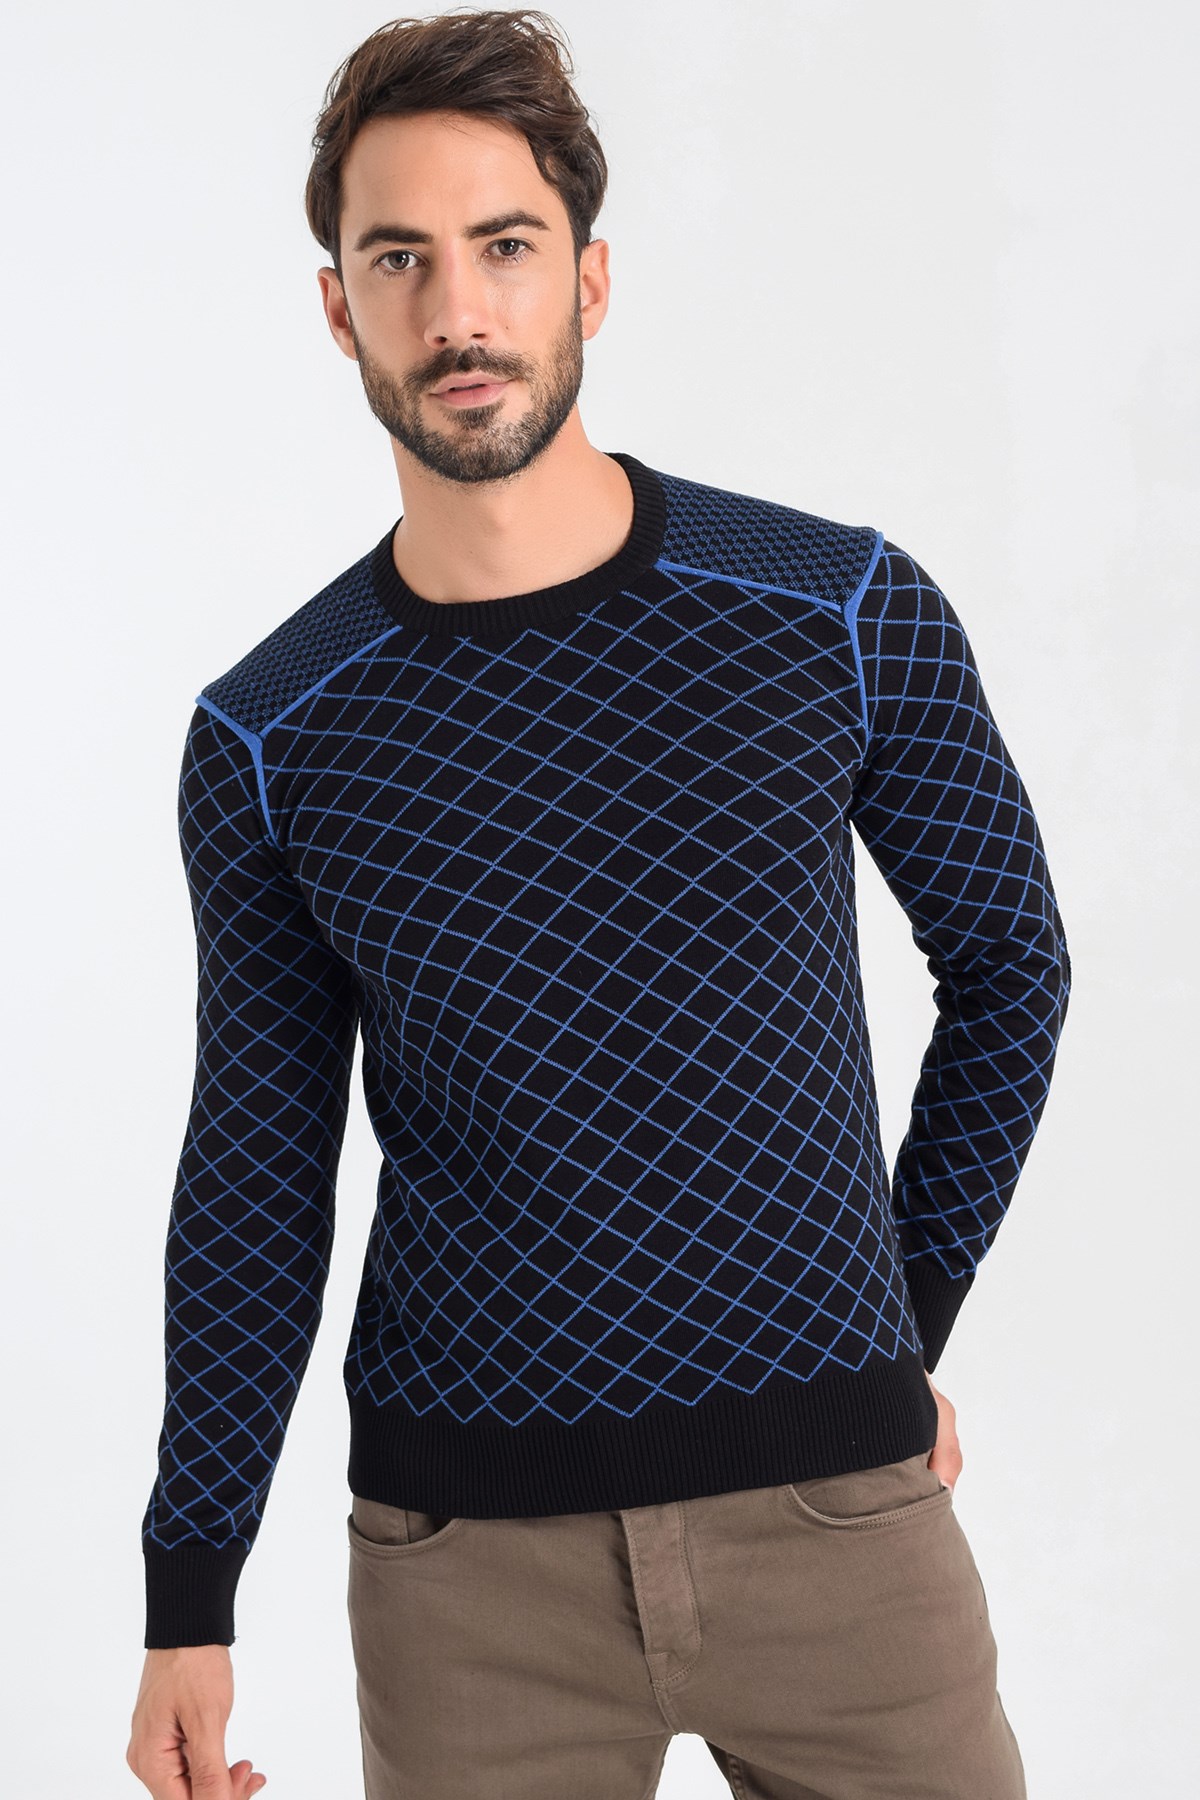 2020 캐주얼 남성 가을 캐주얼 패션 니트 스웨터 스웨터 남성 면화 스웨터 조끼